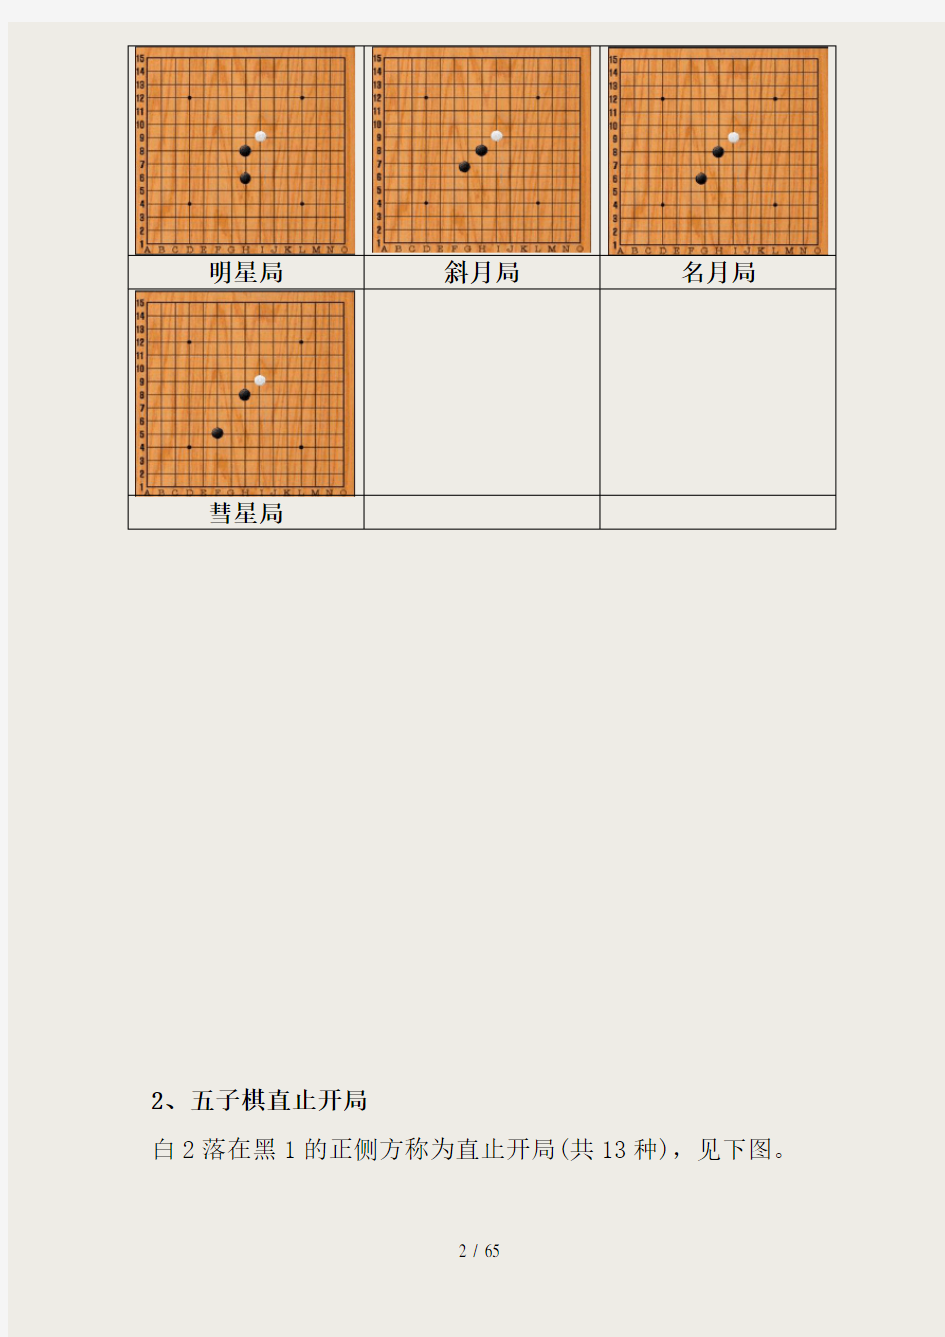 26种五子棋开局图谱,常见的五步开局棋谱(图)